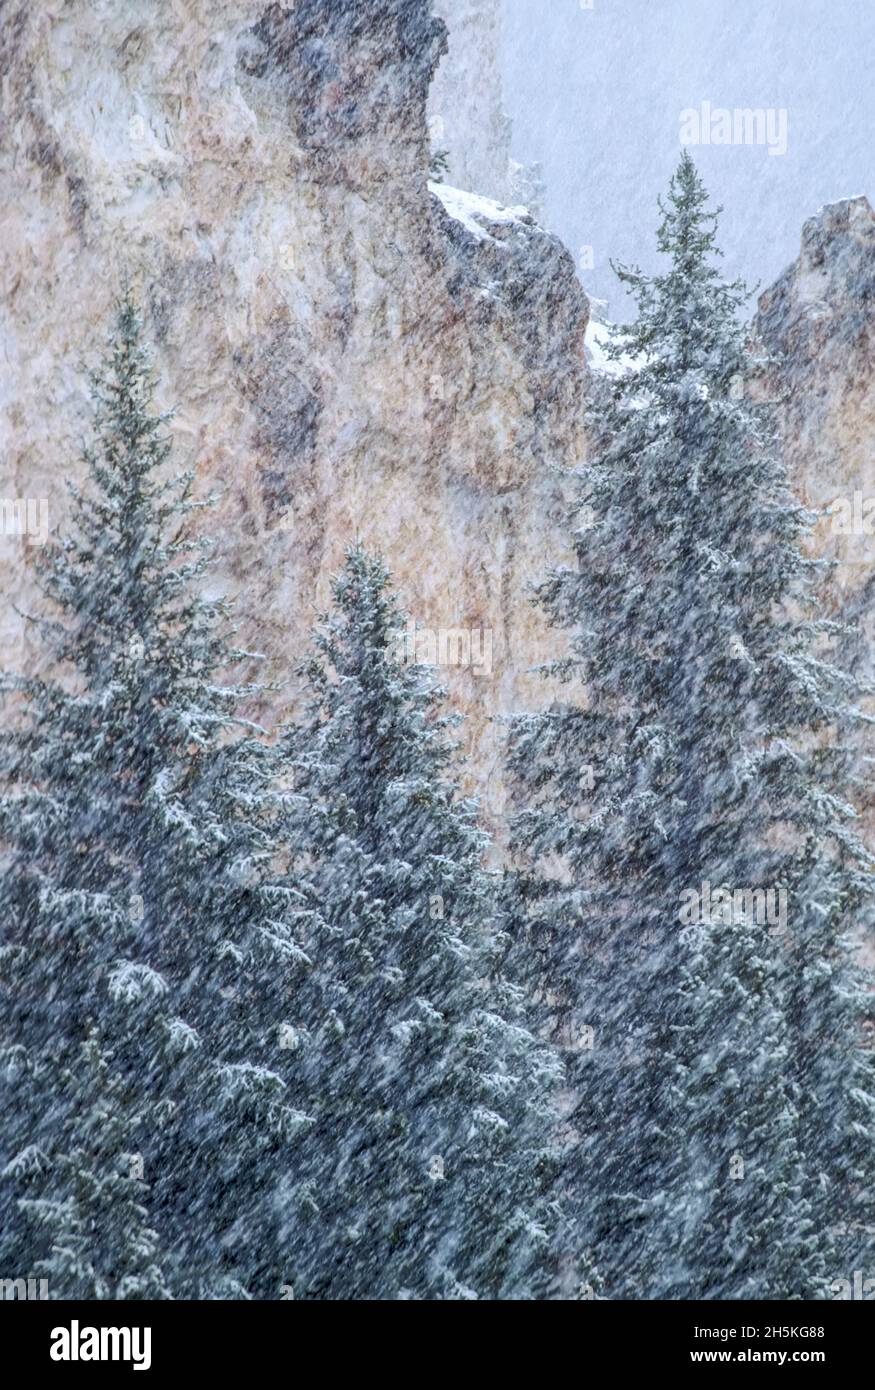 Des flocons de neige diagonaux tombent dans un canyon avec des conifères vert foncé qui se dressent contre les falaises légères lors d'une forte chute de neige Banque D'Images